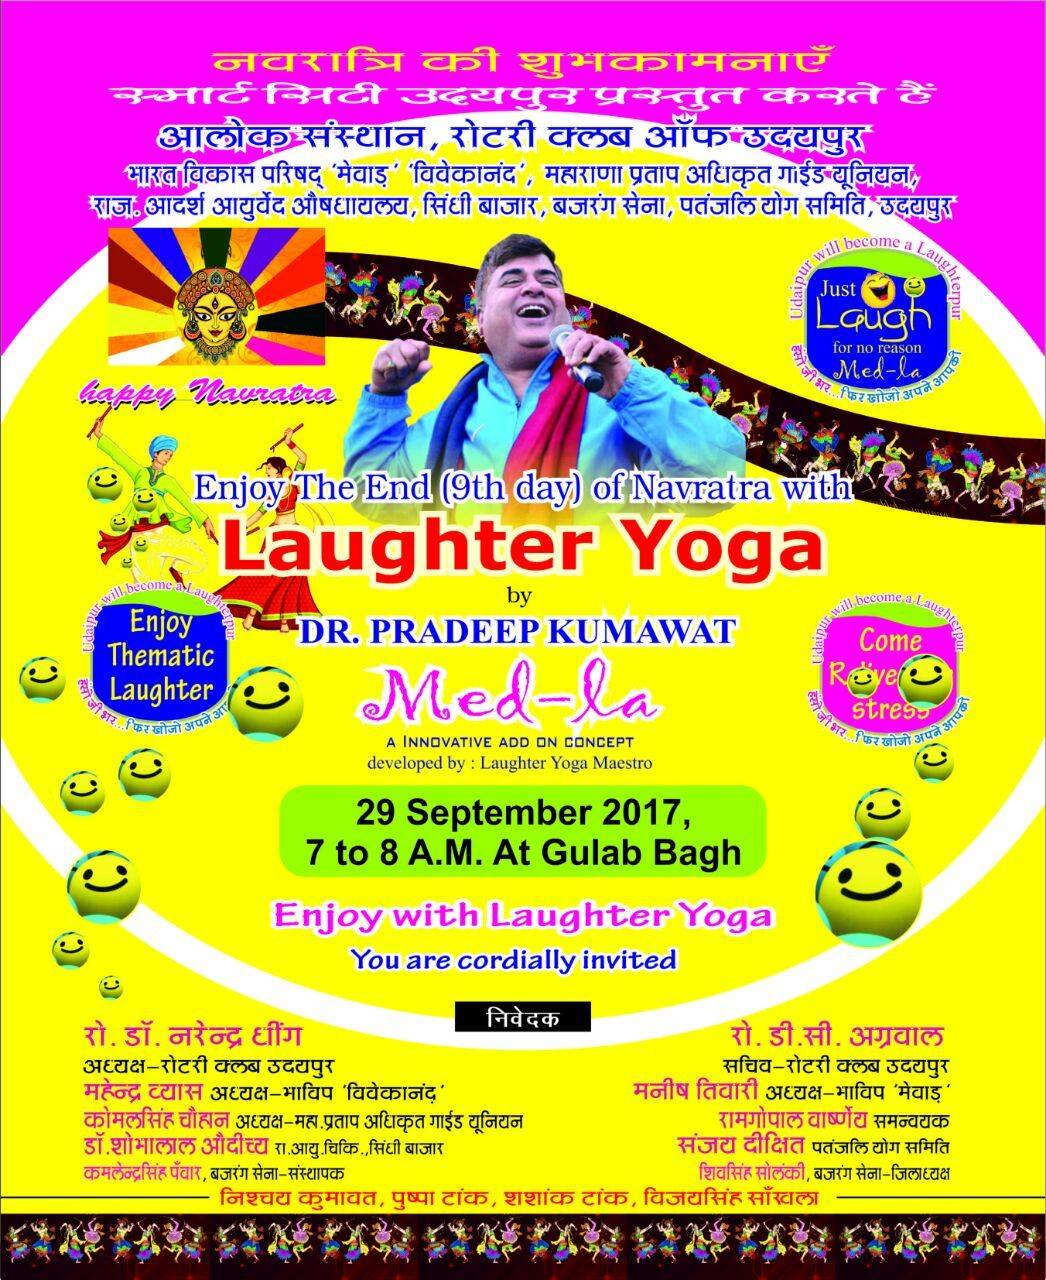 Laughter festival in Gulab bagh on 29th September